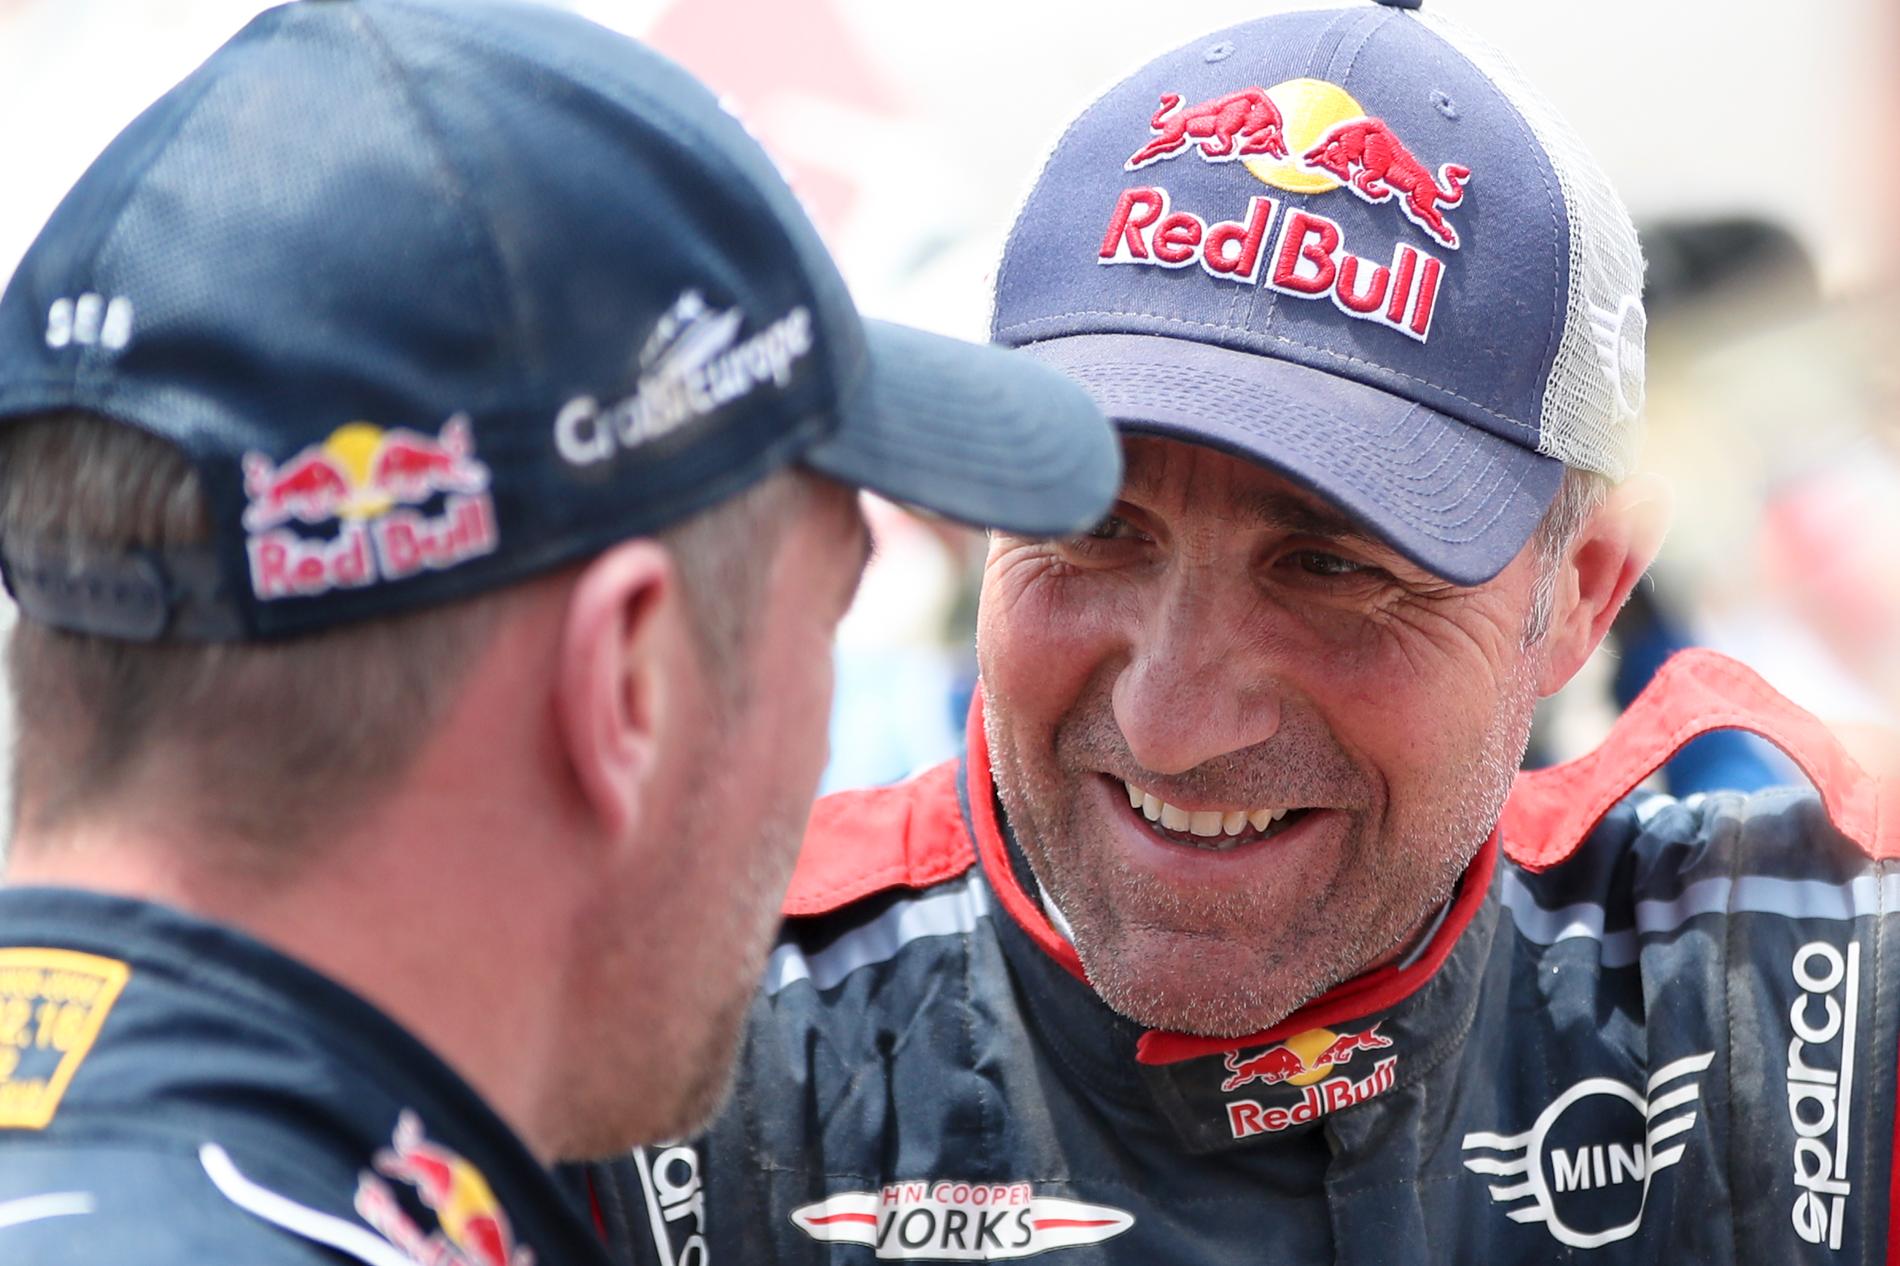 Stephane Peterhansel kör Rally Dakar 2020 - han har vunnit tävlingen 13 gånger med både mc och bil. 